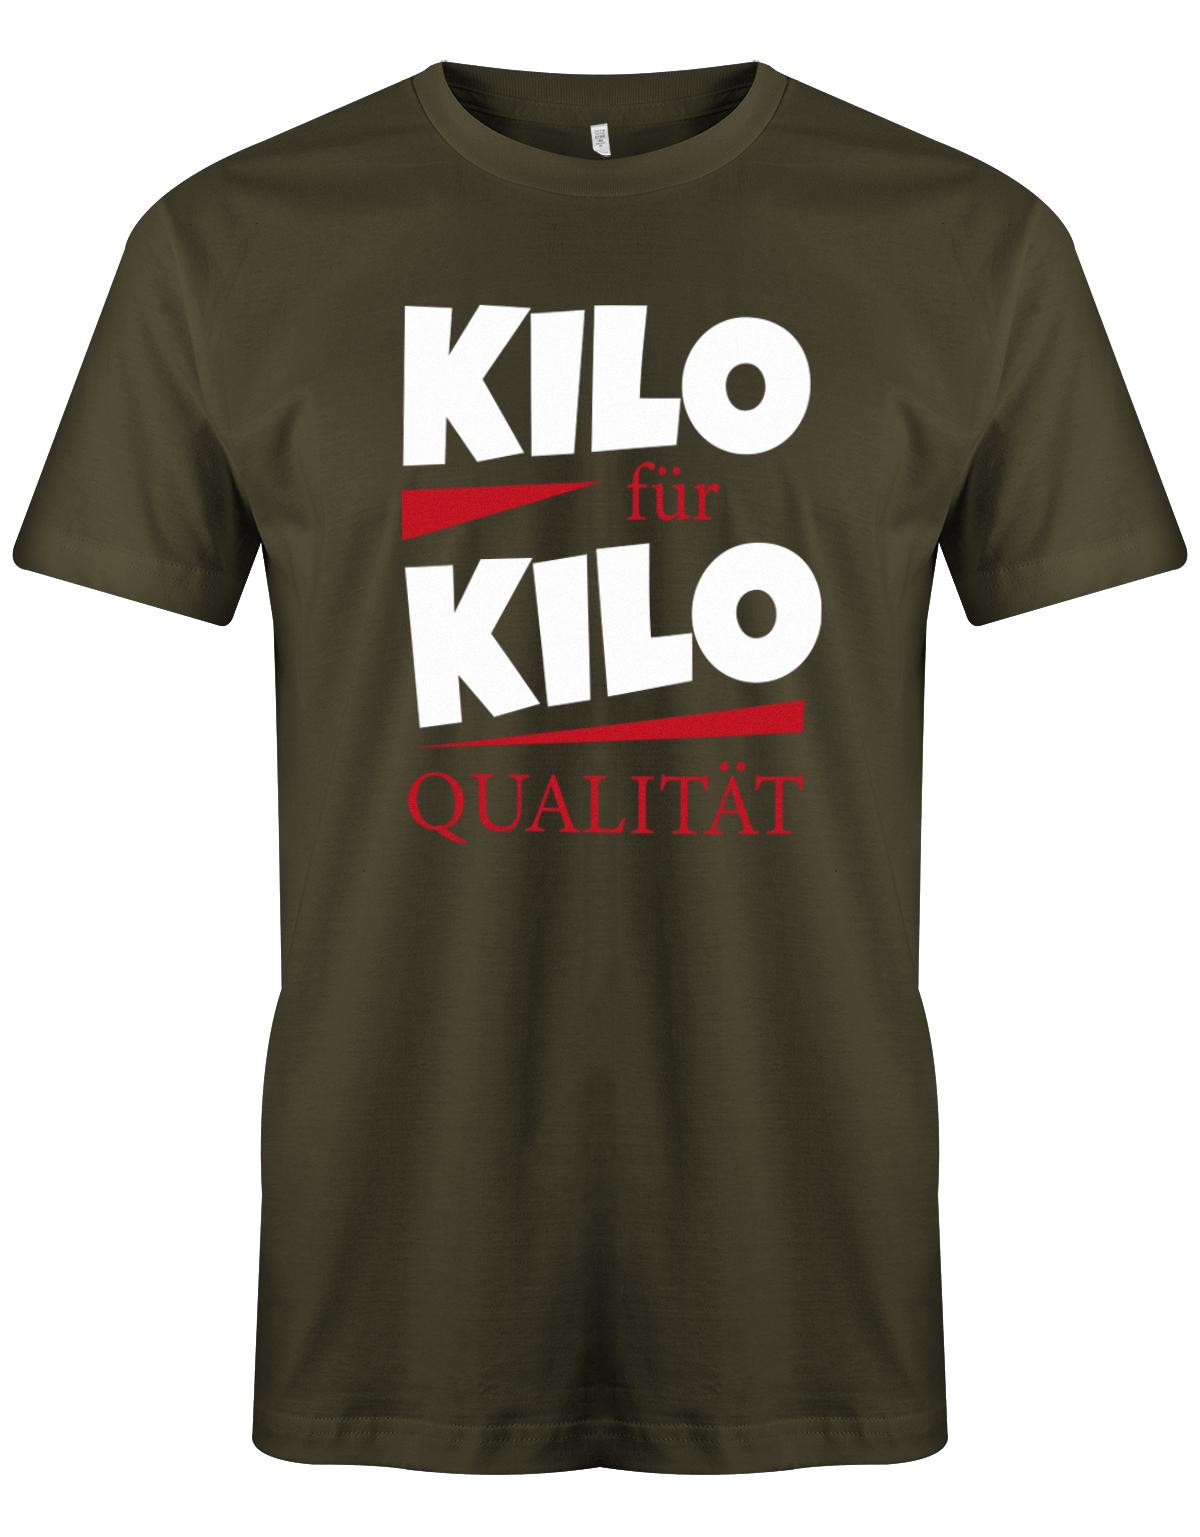 Lustiges Sprüche Shirt - Kilo für Kilo Qualität Army